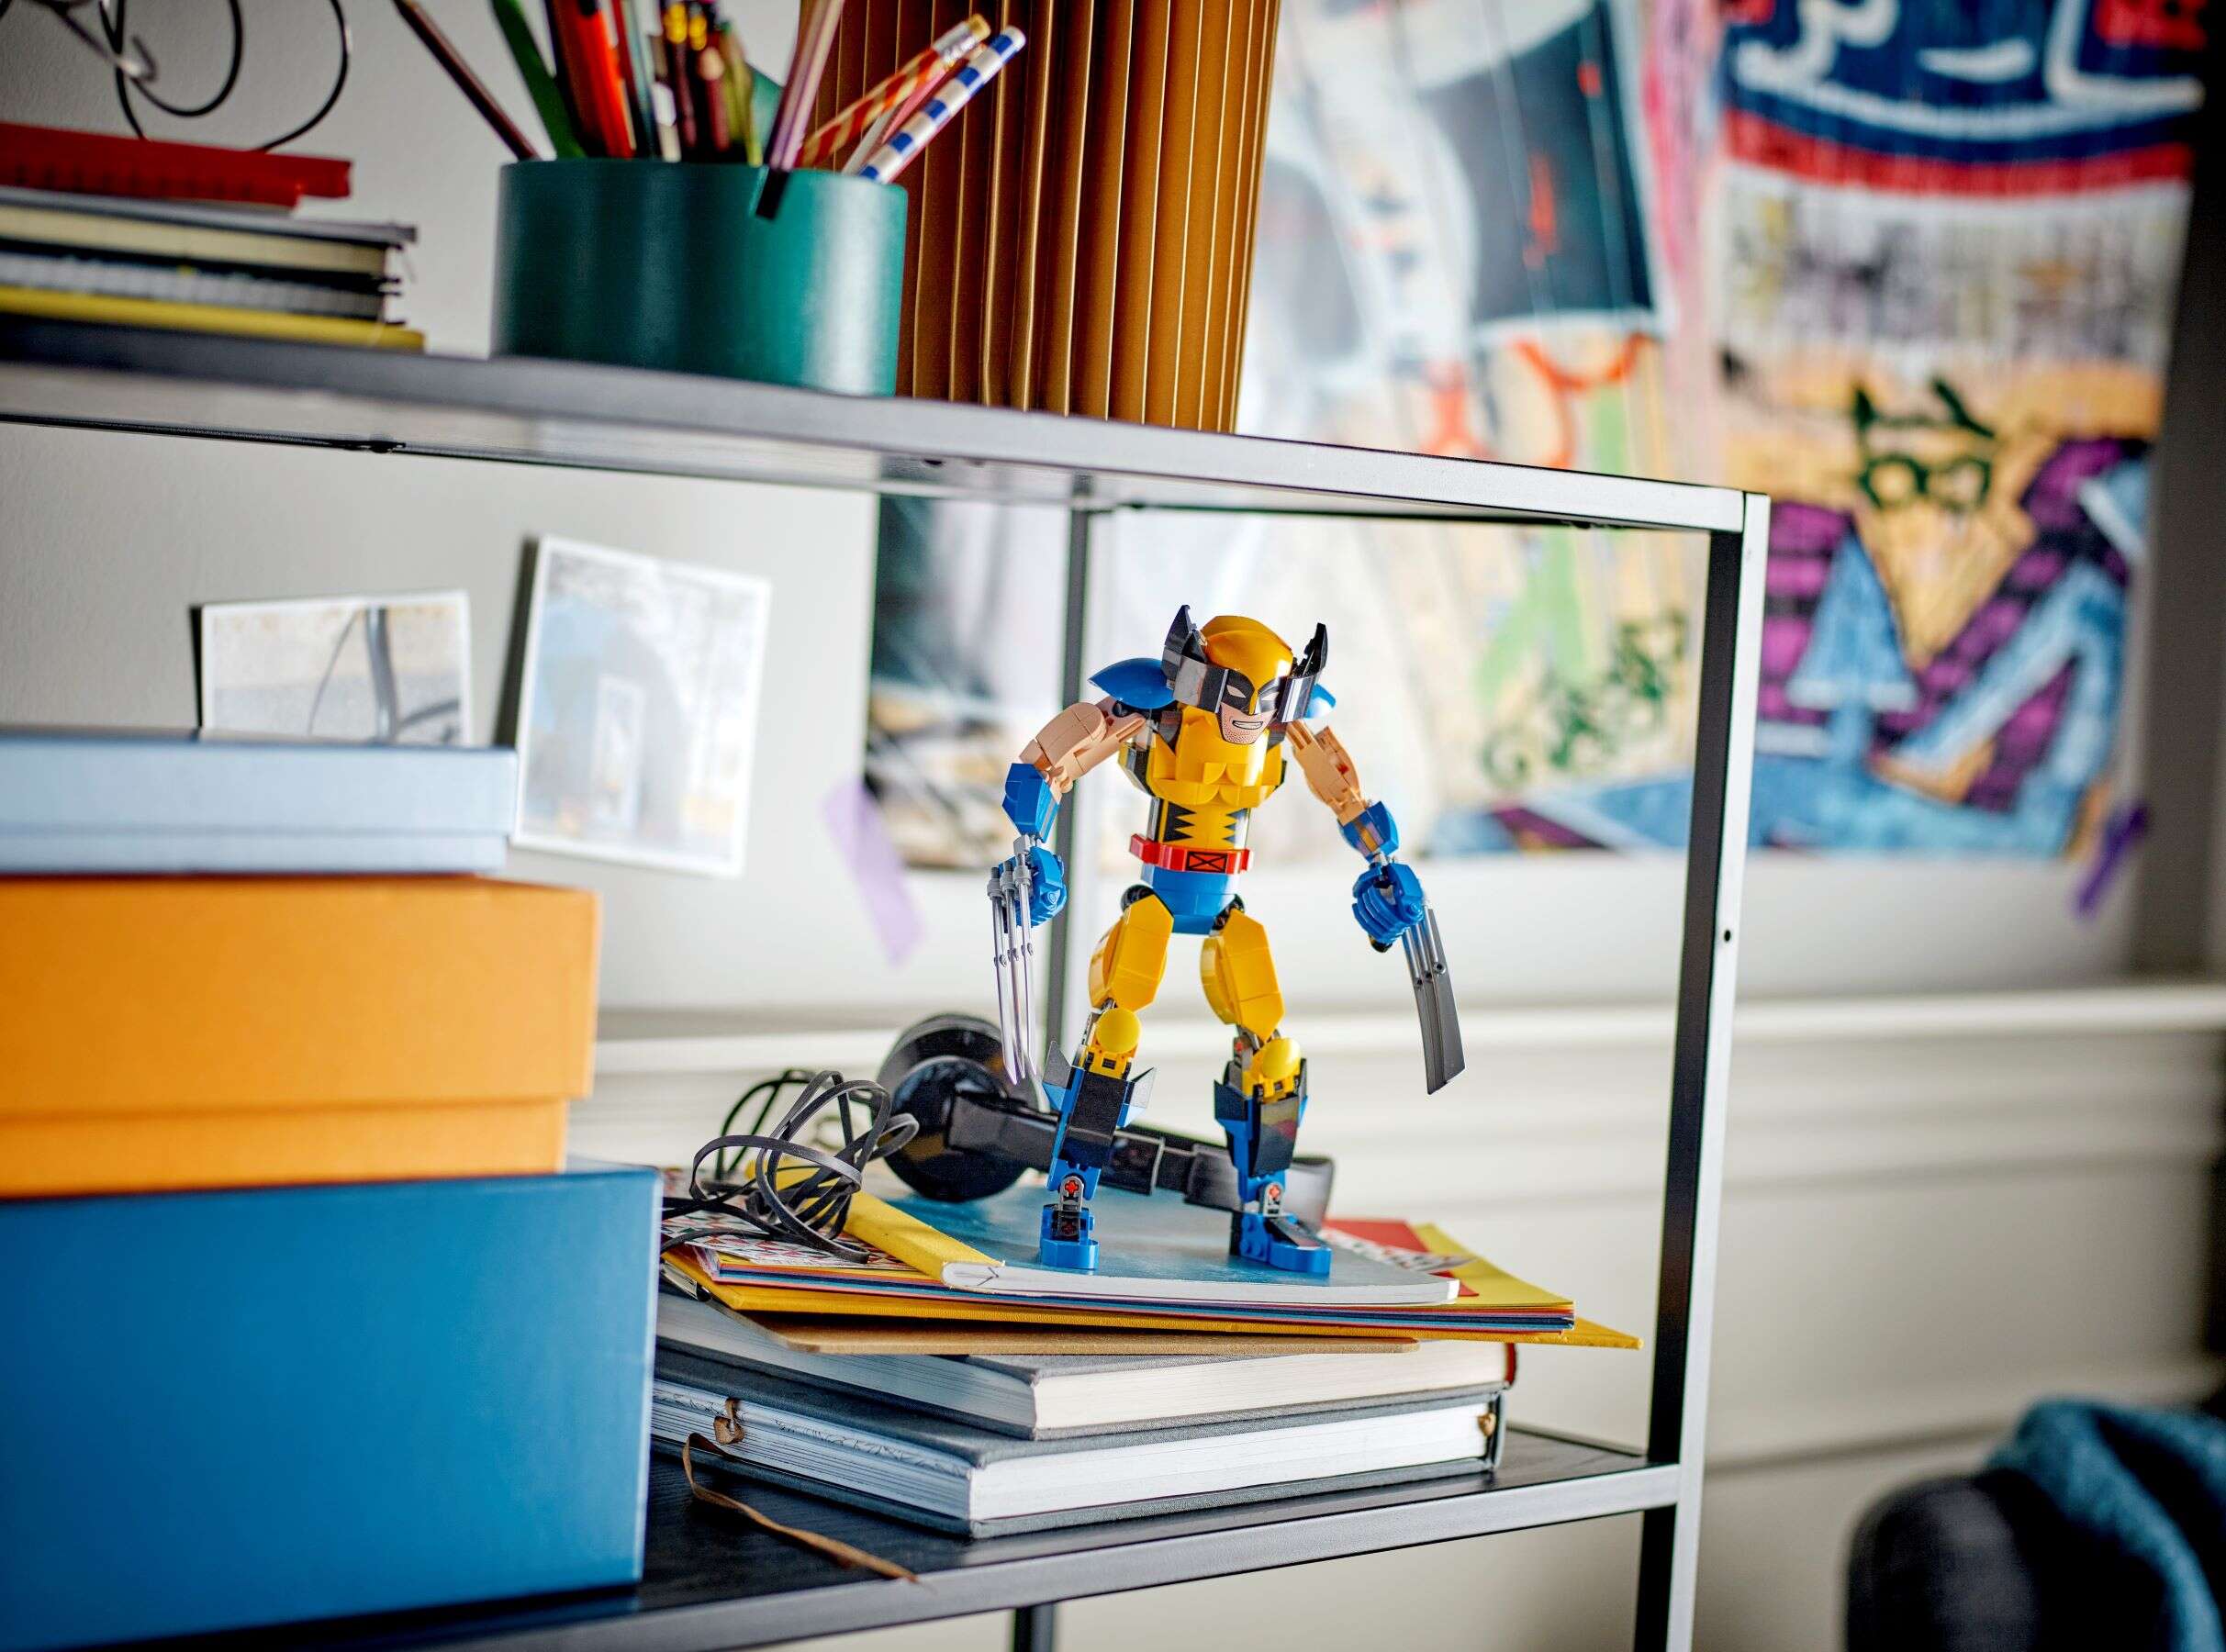 LEGO 76257 Marvel Wolverine Baufigur, voll beweglich, X-Men